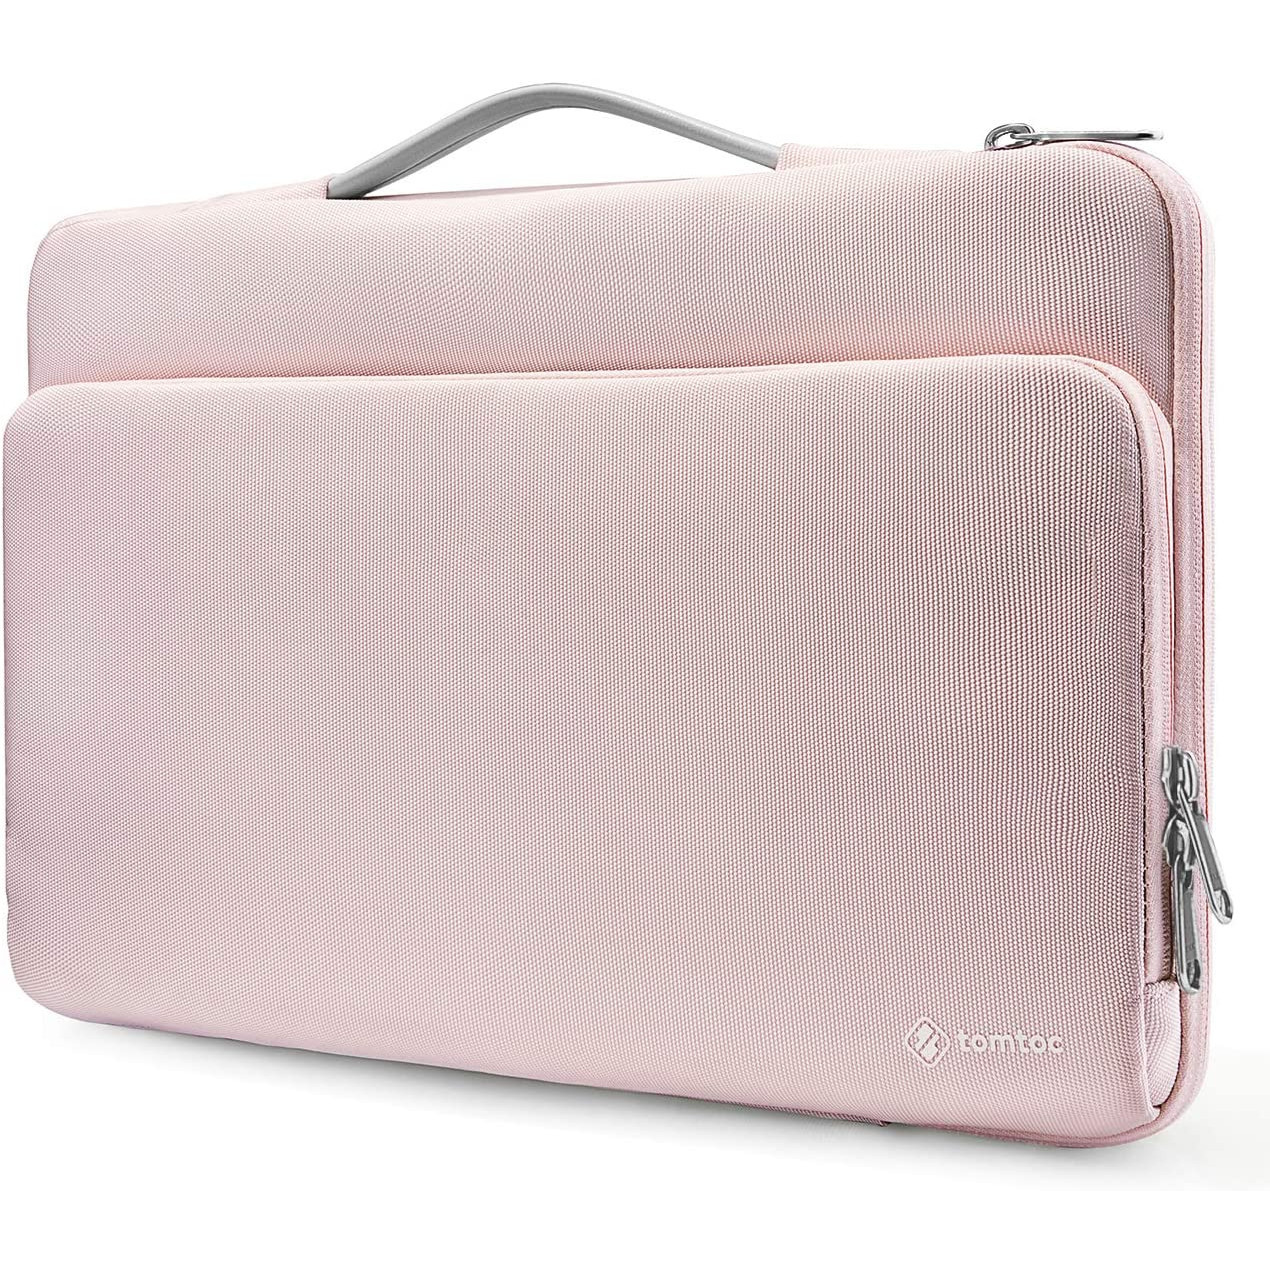 Túi Xách Chống Sốc Briefcase Macbook Pro/Air 13” New Pink (A14-B02C)chính hãng